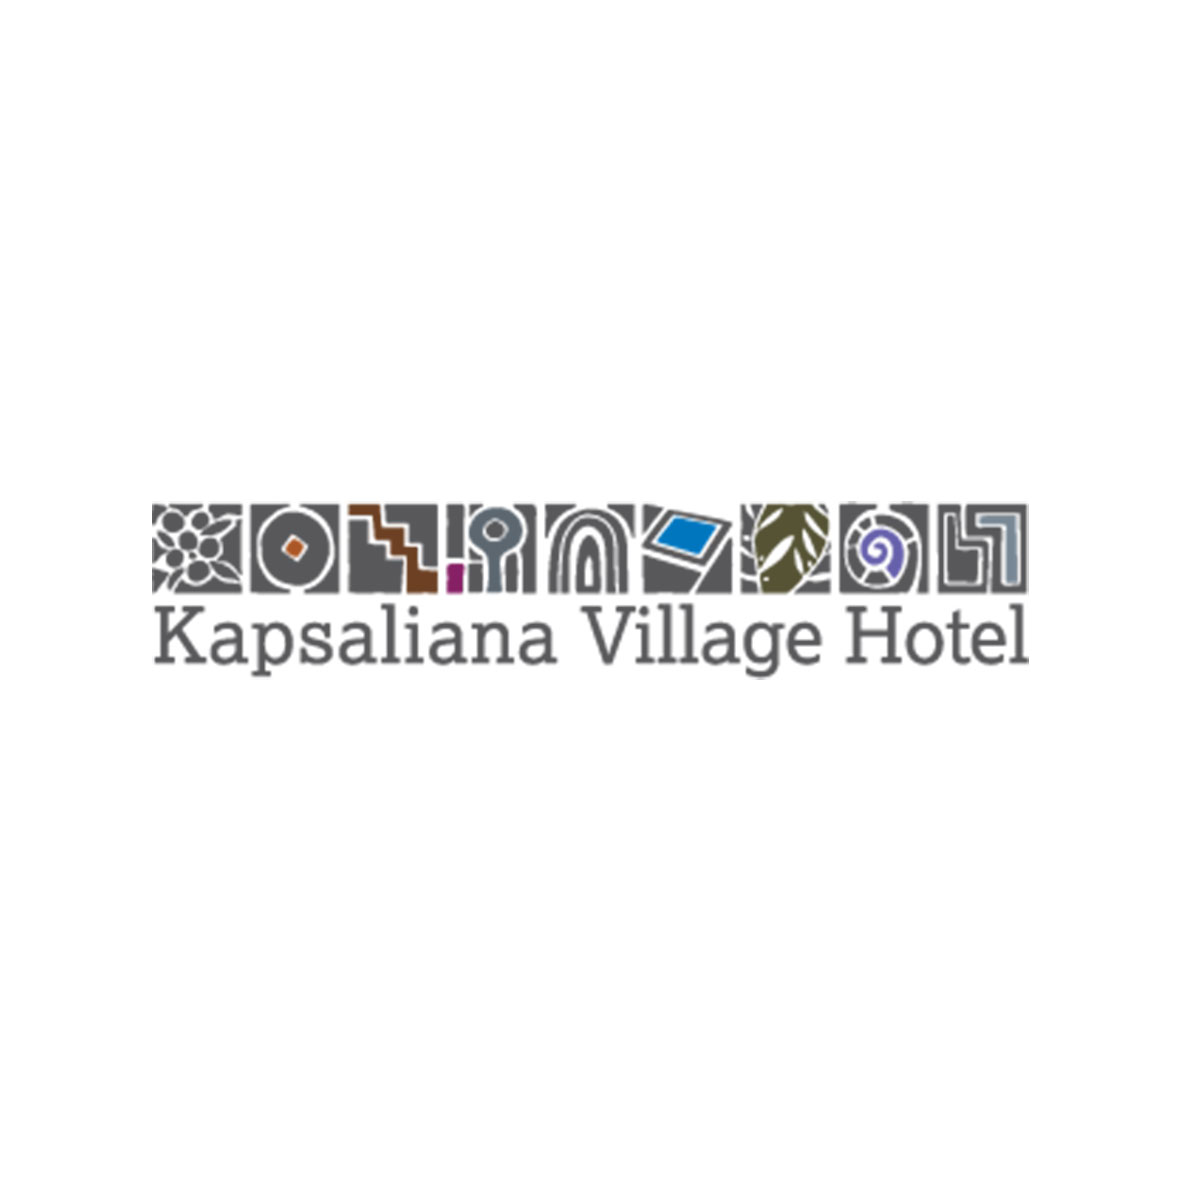 Kapsaliana Village Hotel